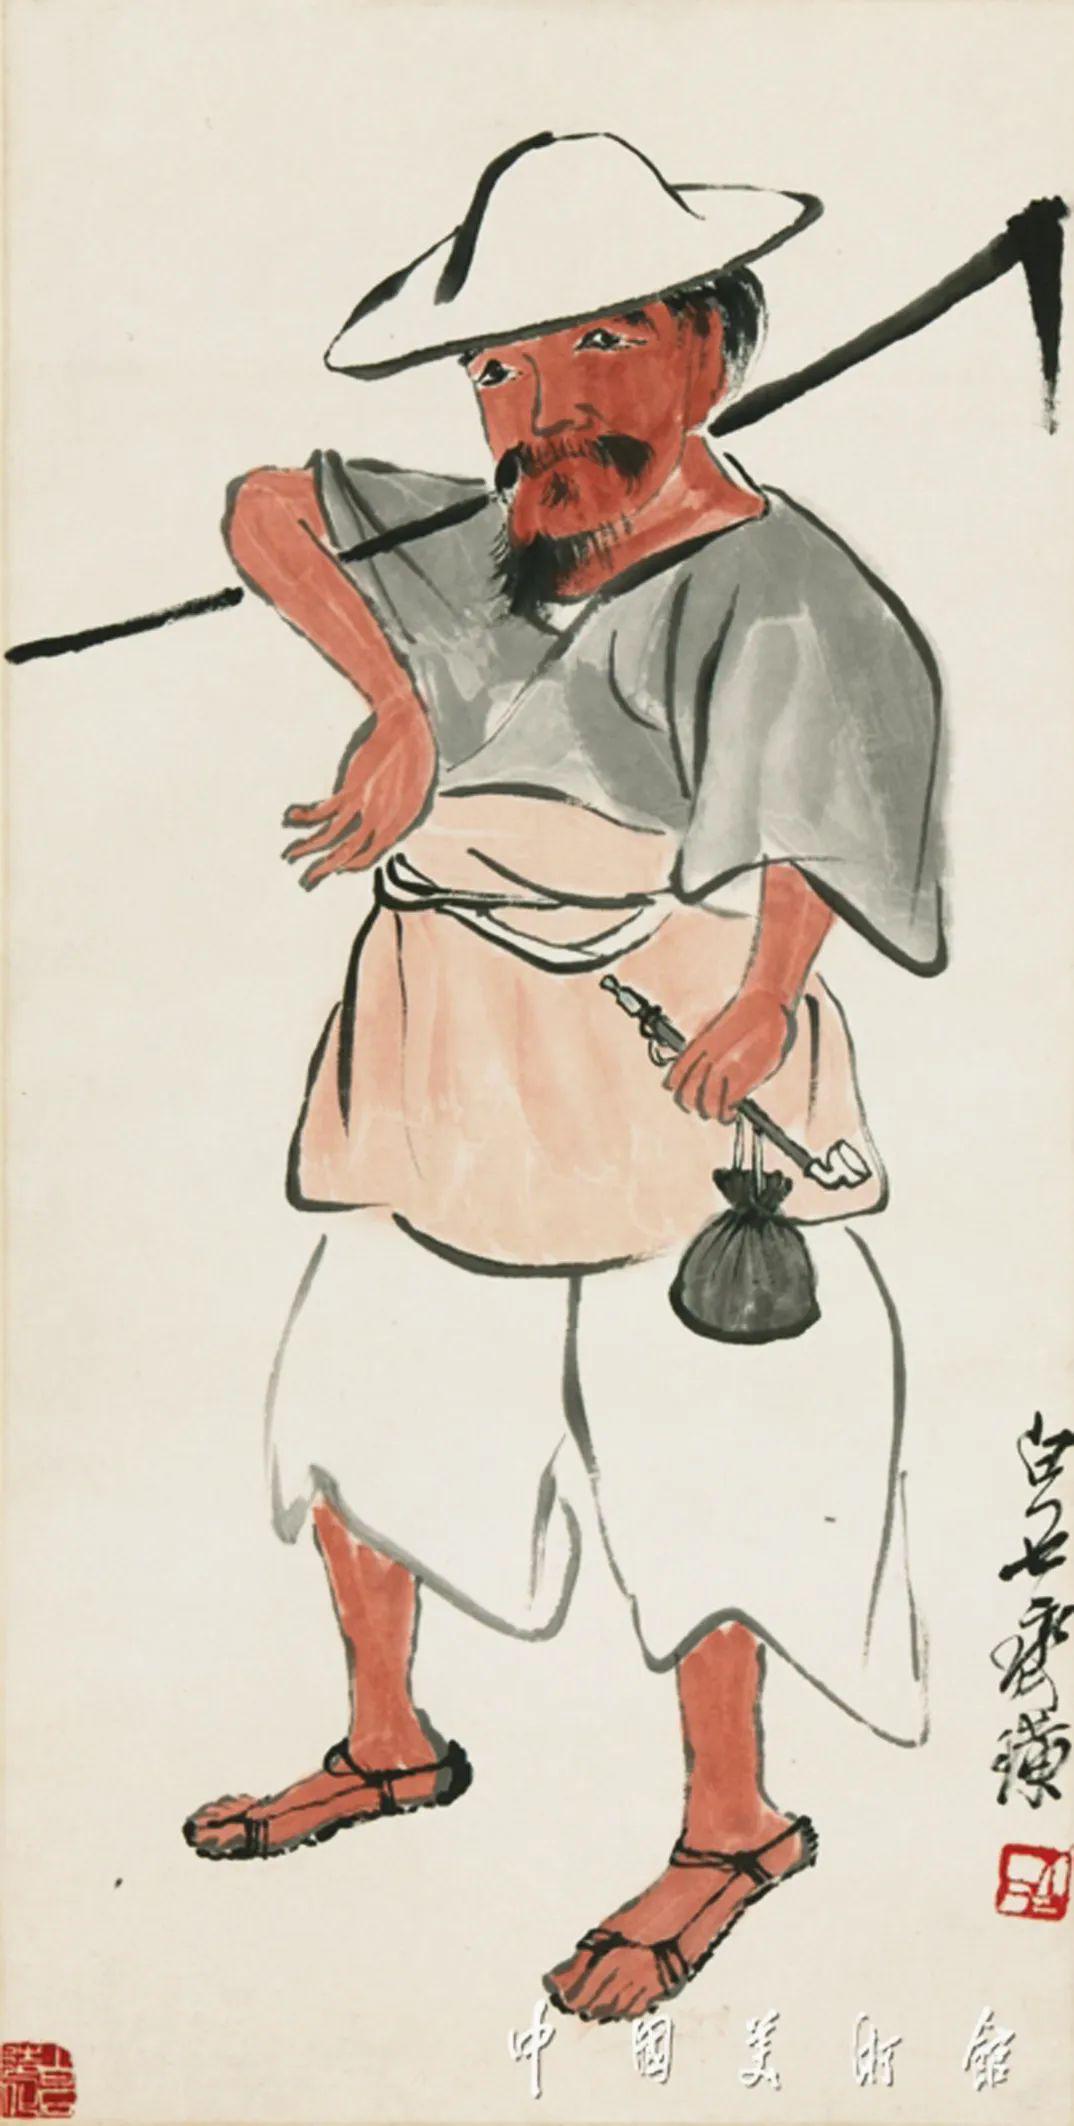 中国美术馆藏作品中的劳动者形象